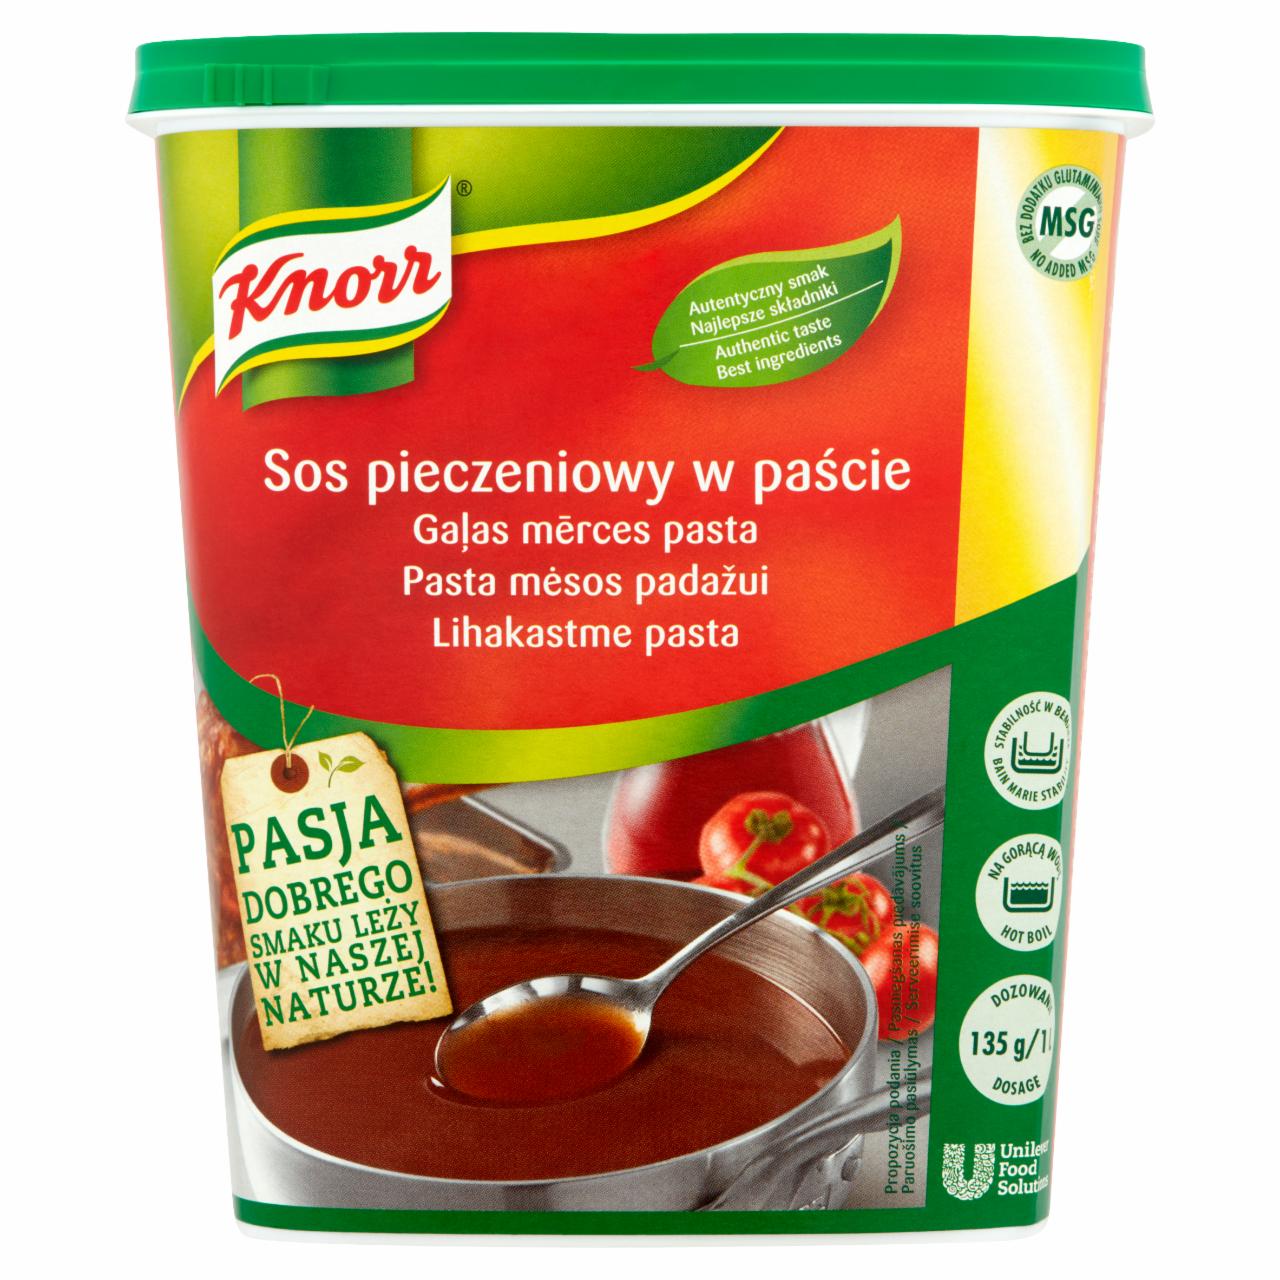 Zdjęcia - Knorr Sos pieczeniowy w paście 1,2 kg